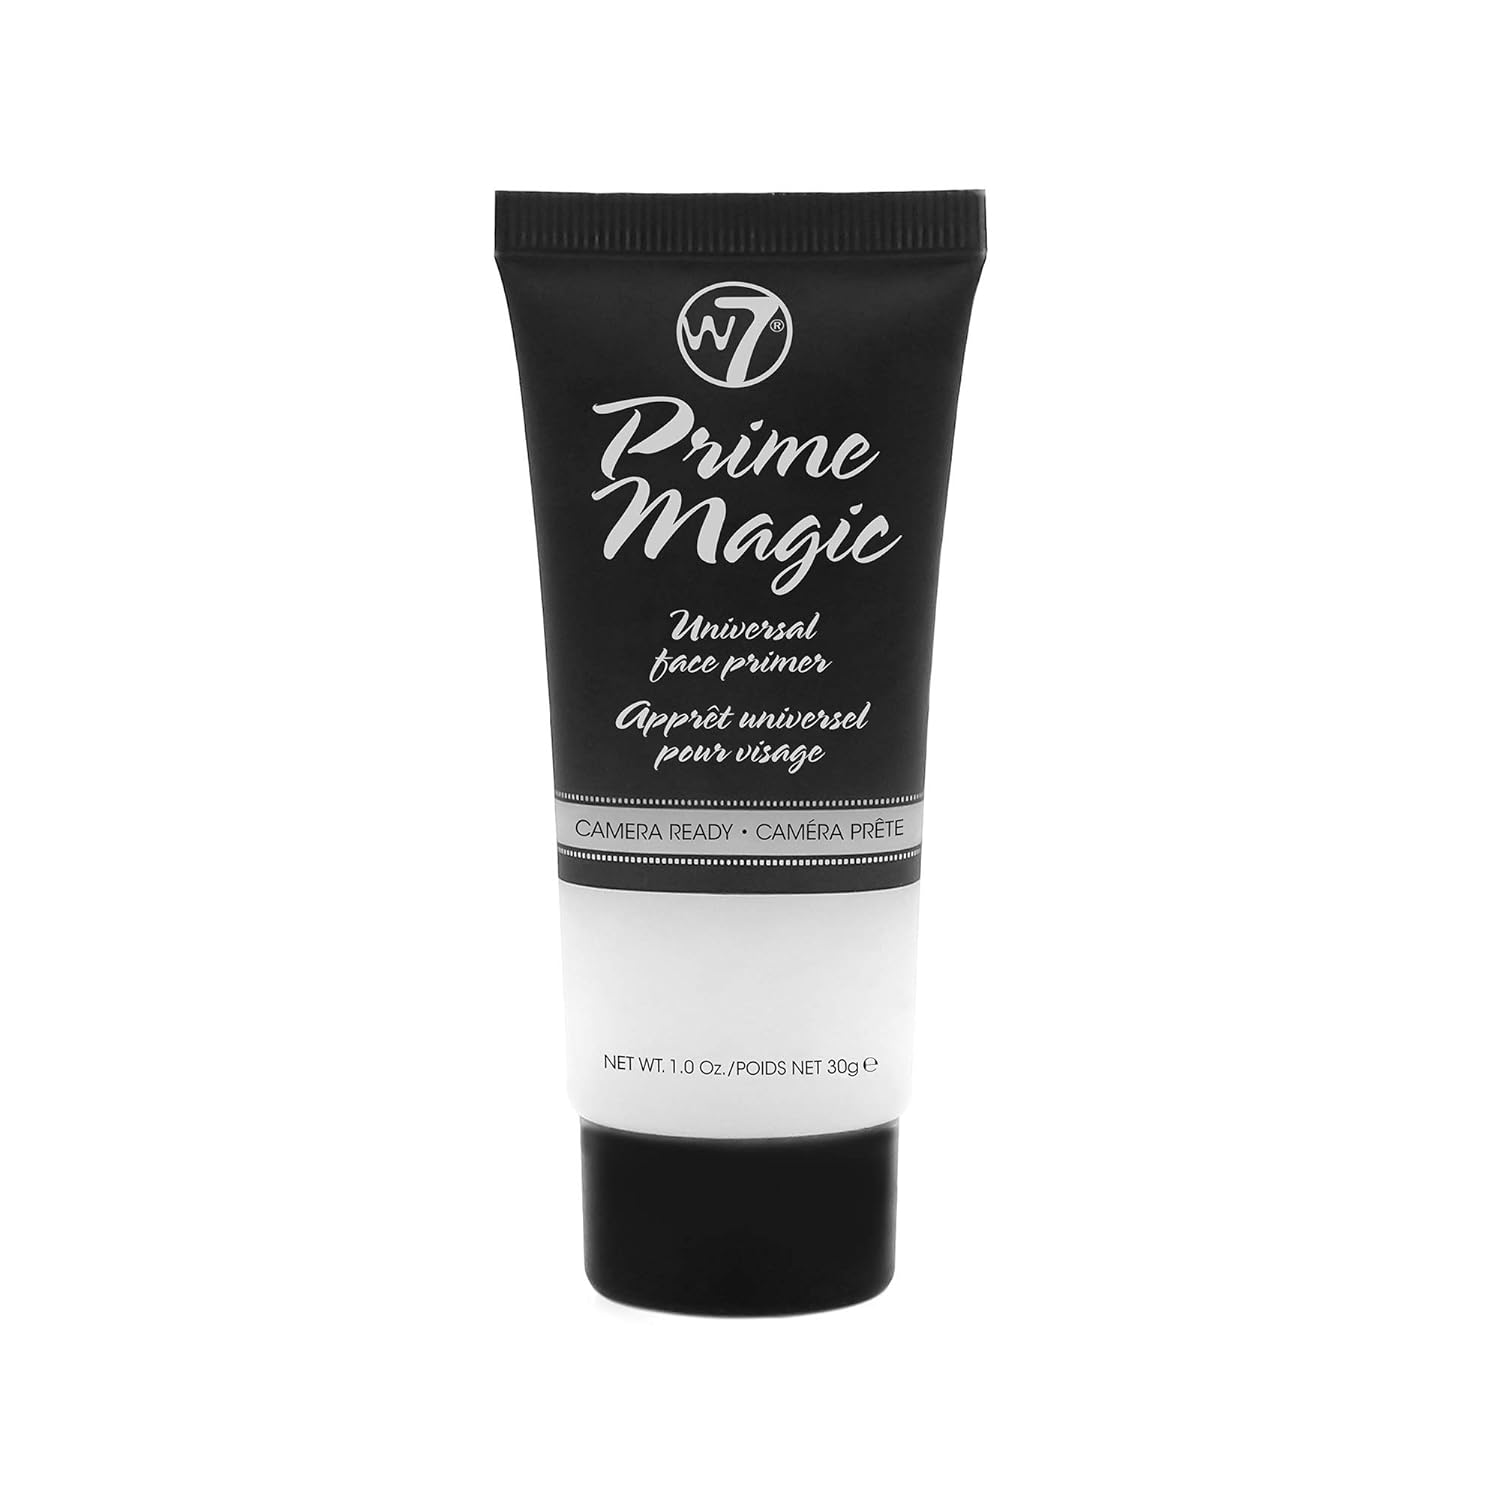 W7 Prime Magic Face Primer - Clear Makeup Base Priming Formula For Flawless Skin - Vegan Makeup